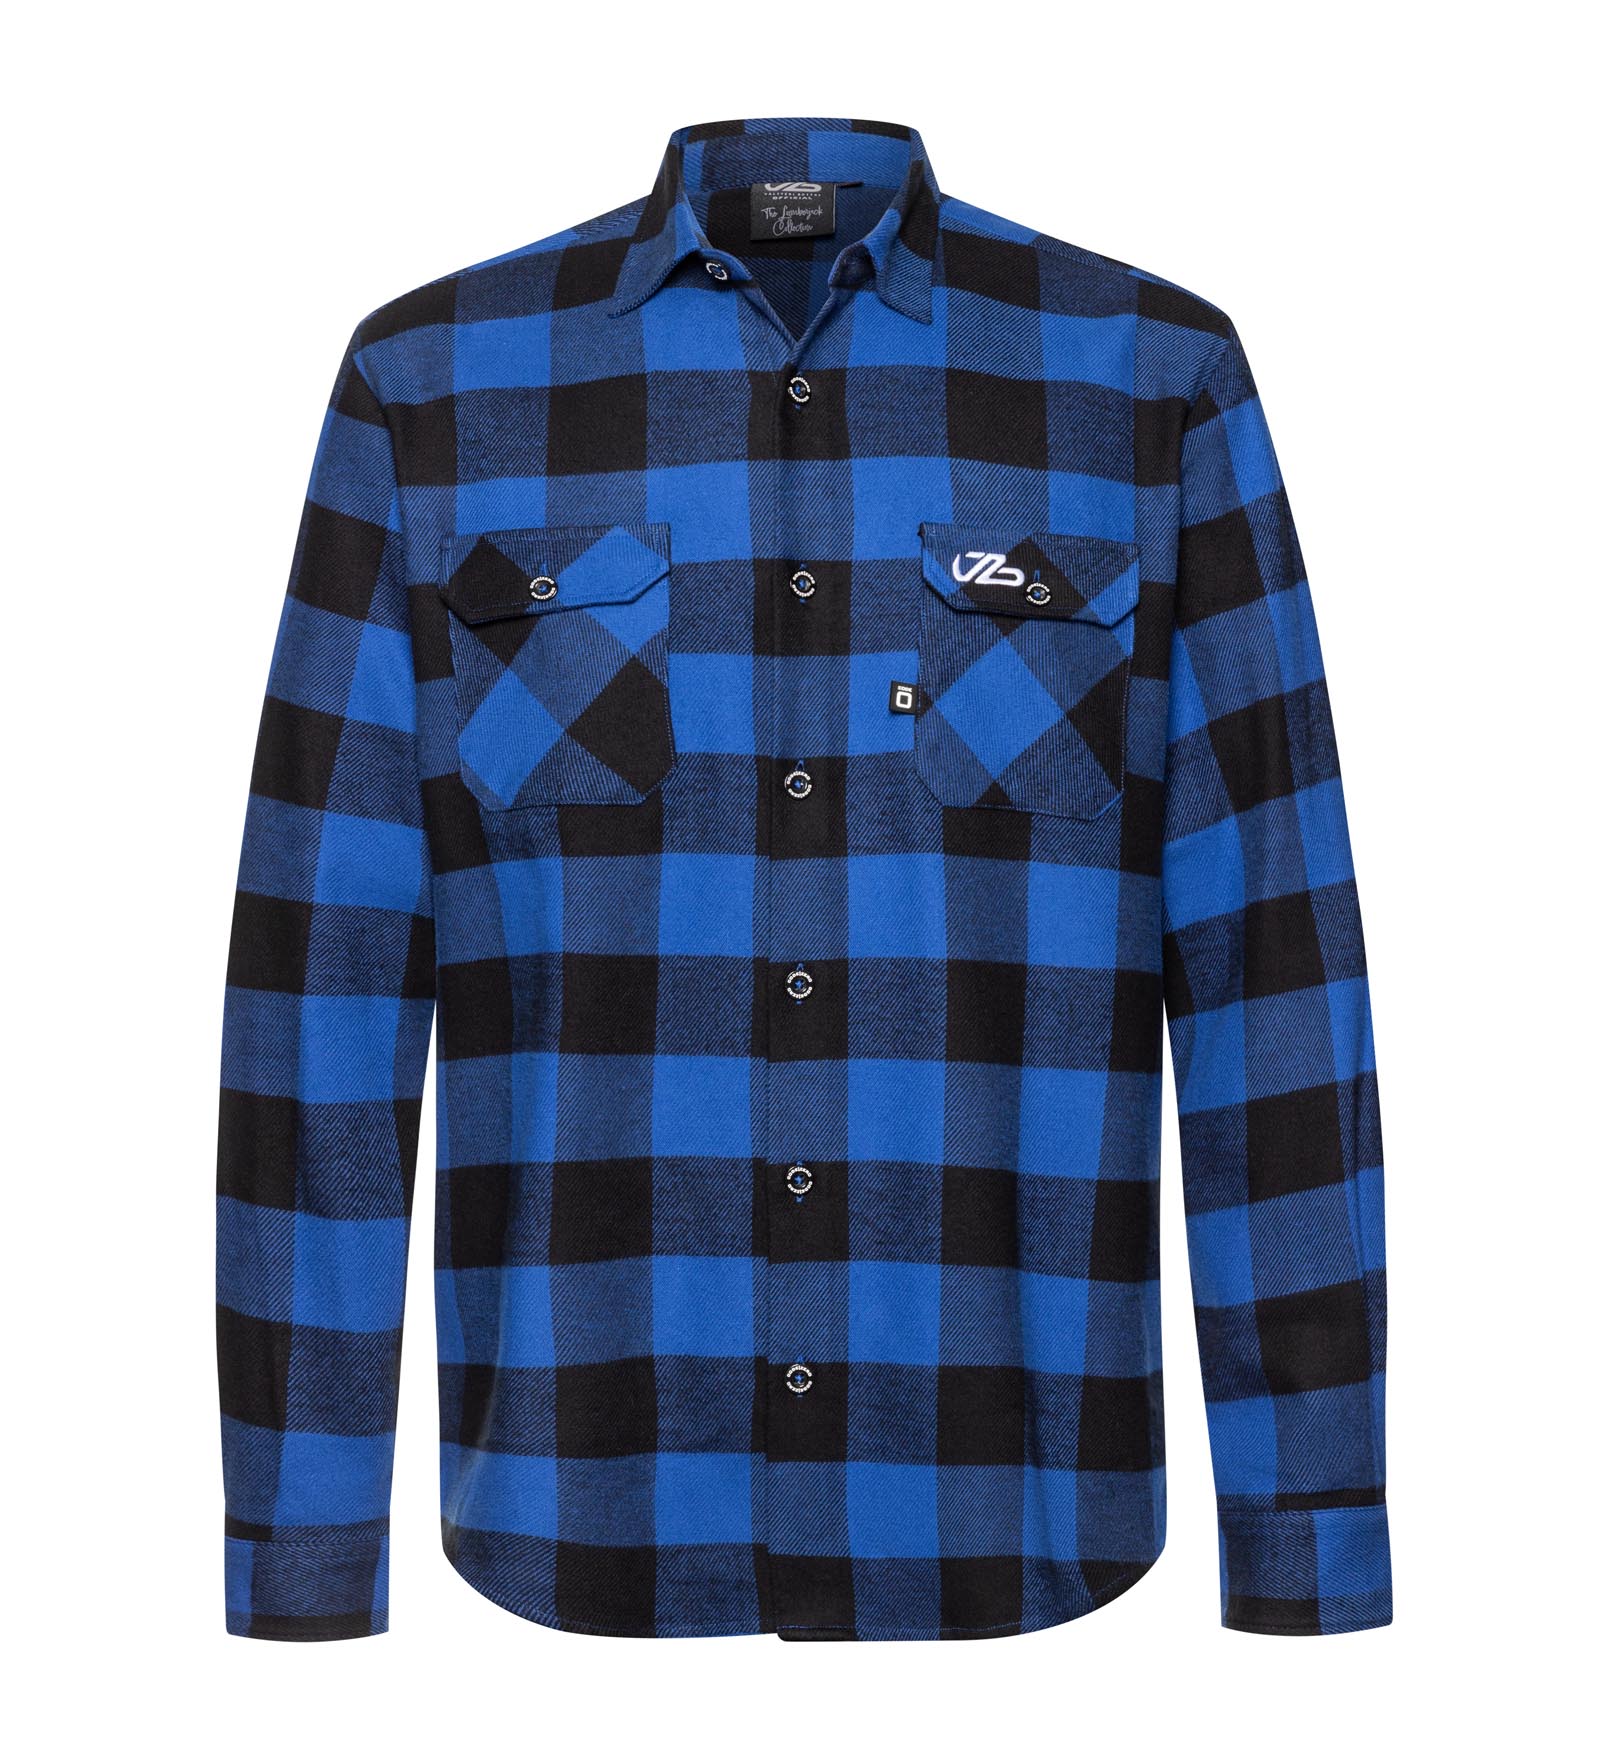 adopt Honesty Do well () Shirt Men Lumberjack 3XL | Valtteri Bottas Online Shop